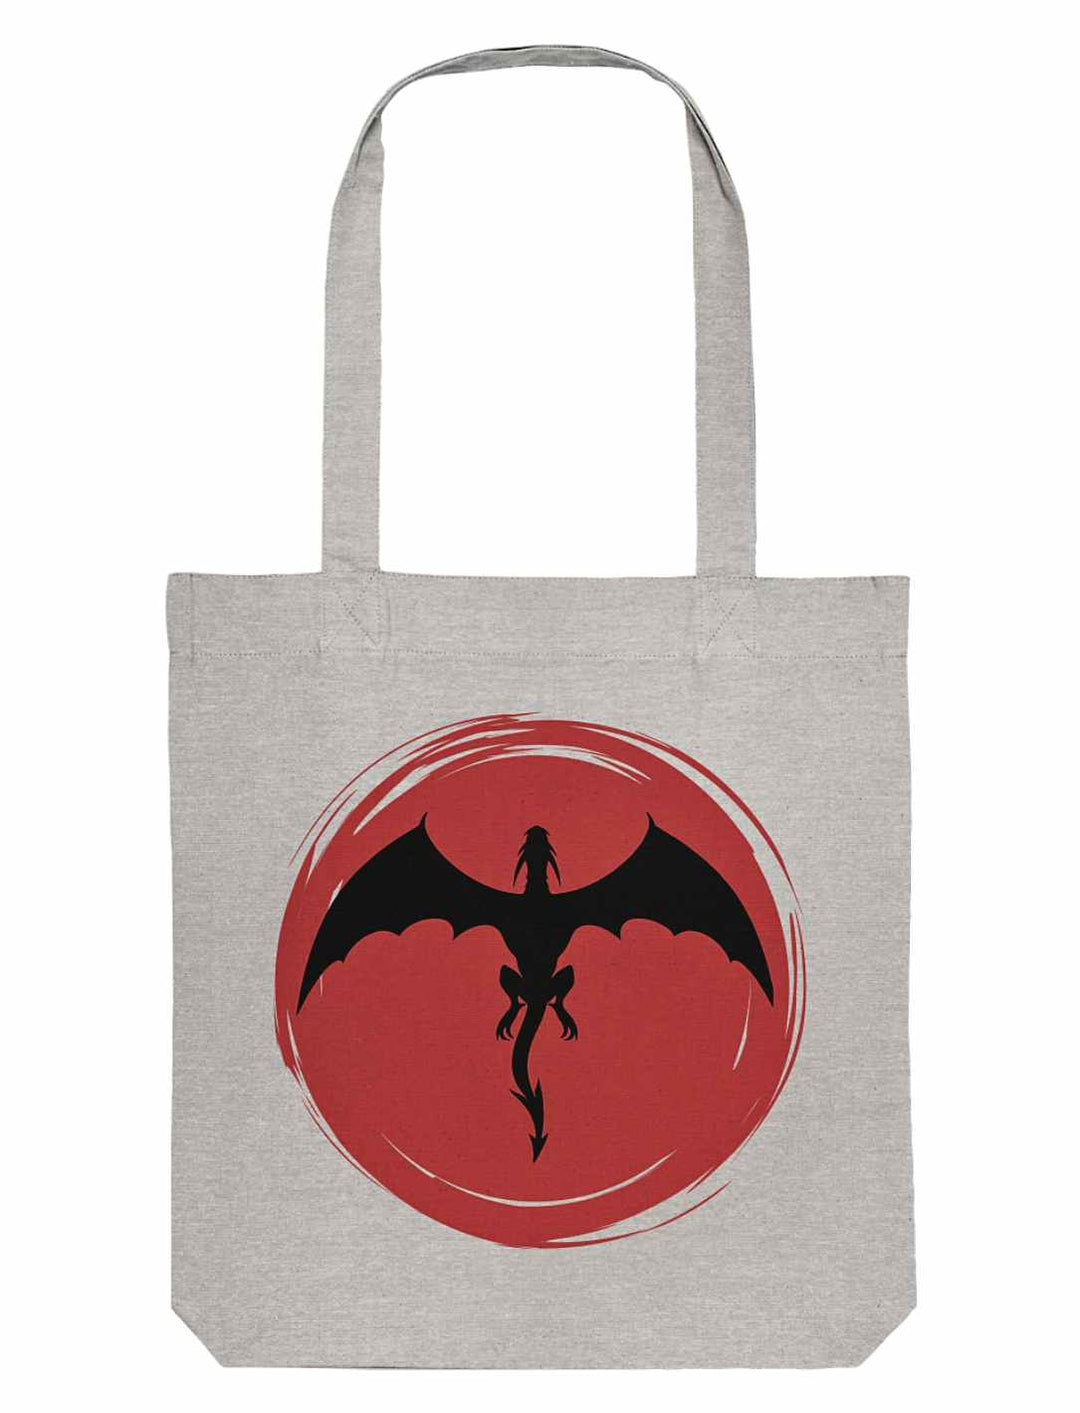 Graue Organic Tote Bag von Runental, verziert mit dem 'Saga of the Dragon'-Motiv, stellt eine stilvolle Wahl für Liebhaber der Drachenlegenden dar.